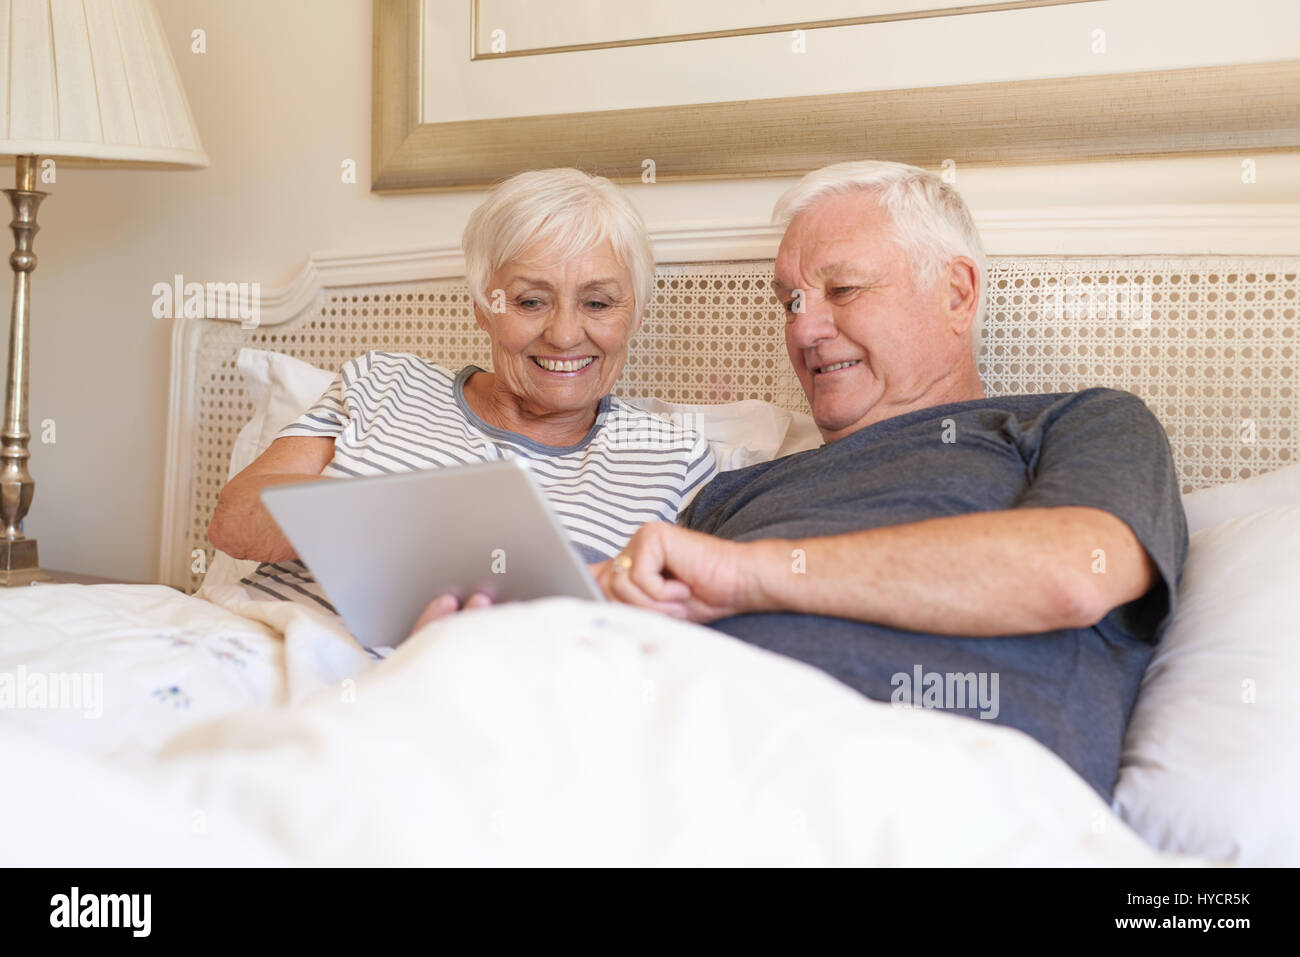 Smiling seniors à l'aide d'une tablette numérique together in bed Banque D'Images